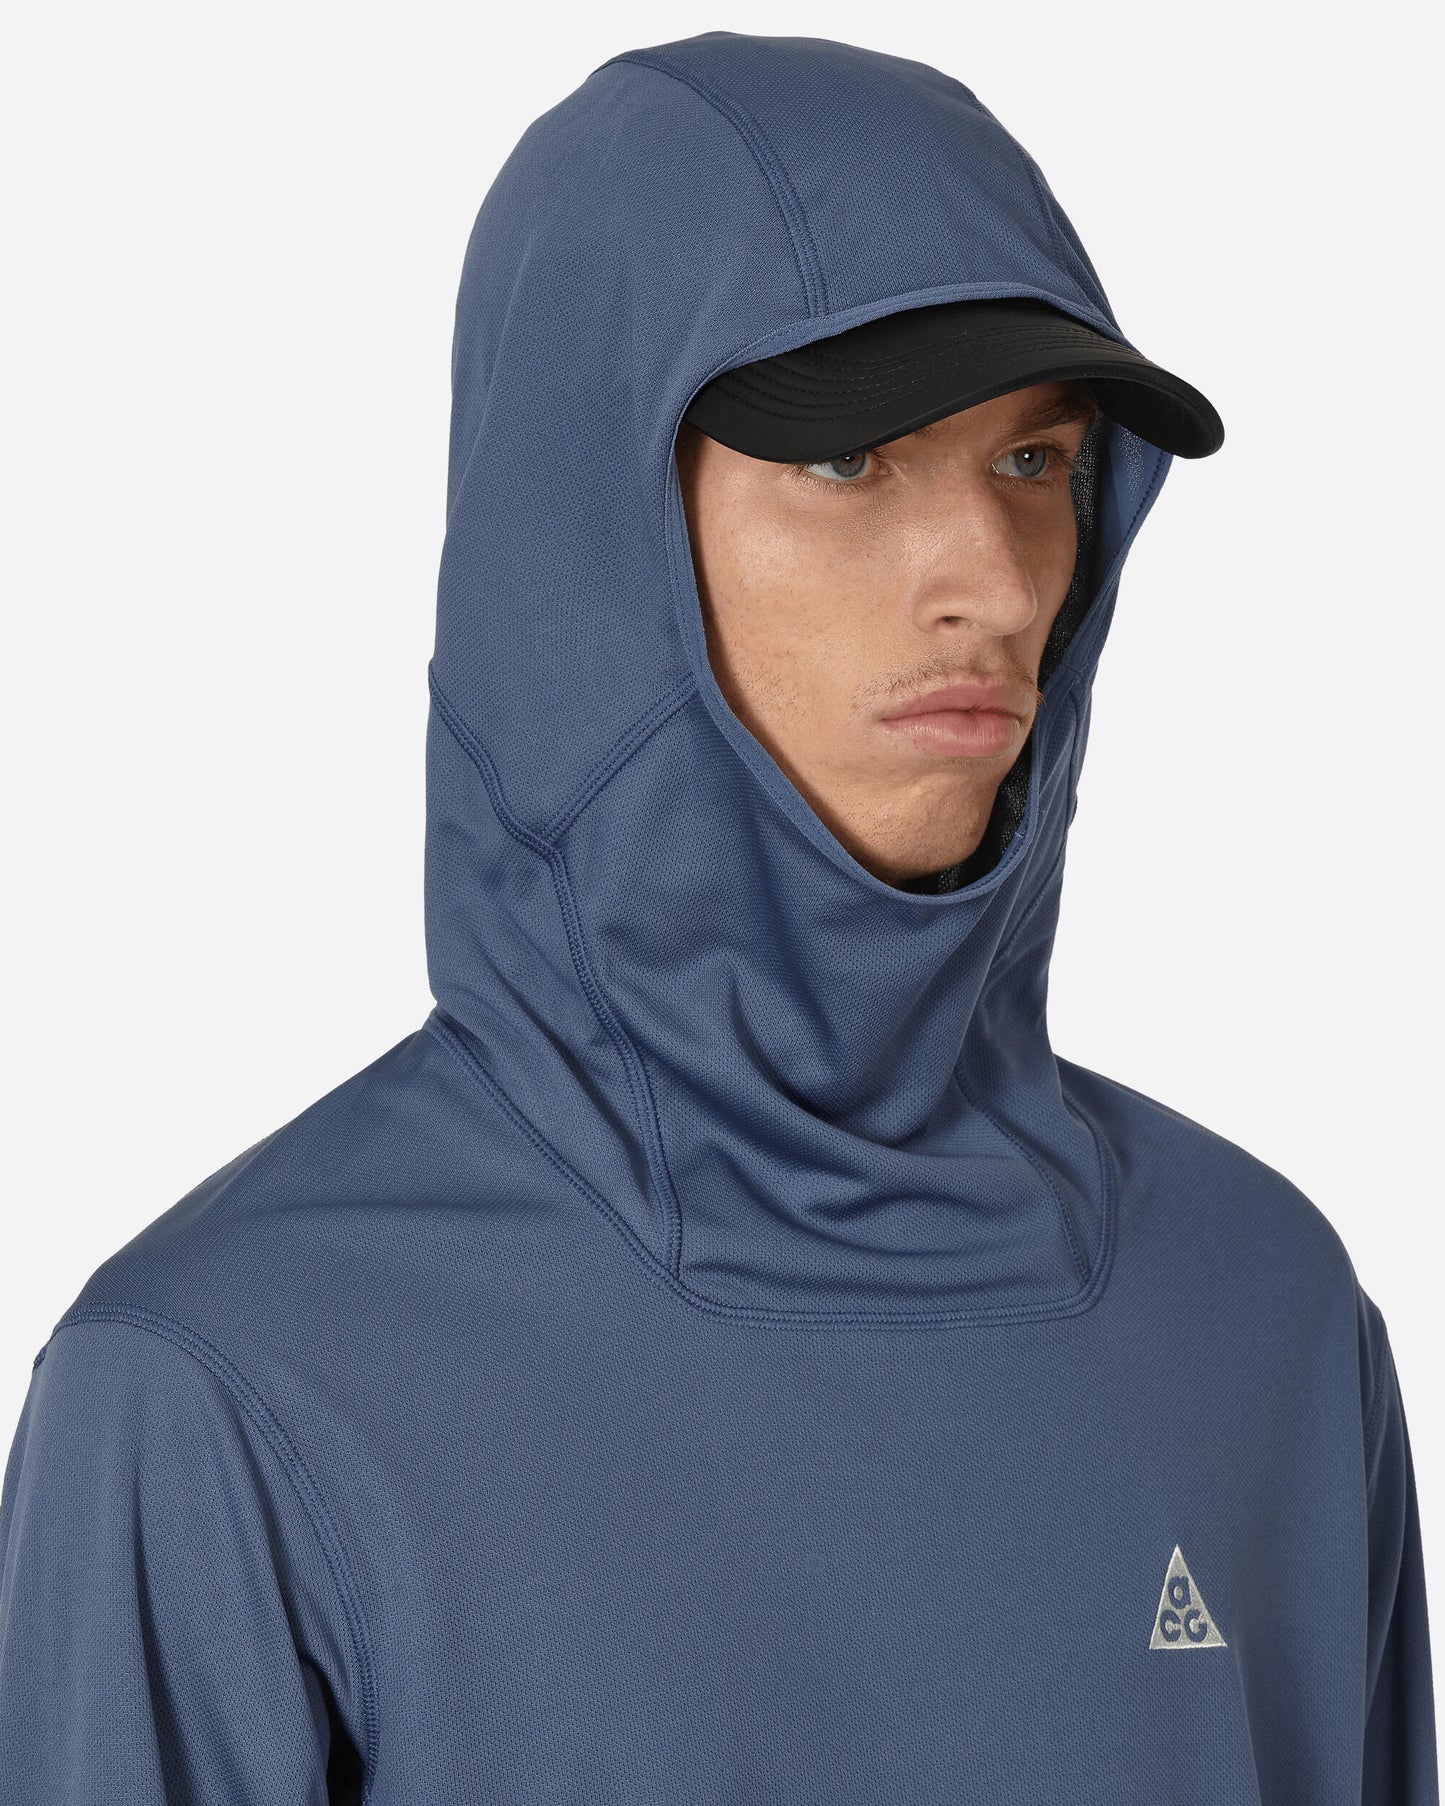 Nike Acg Dfadv Lava Tree Uv Hdy Diffused Blue/Summit White Sweatshirts Hoodies DX6967-491